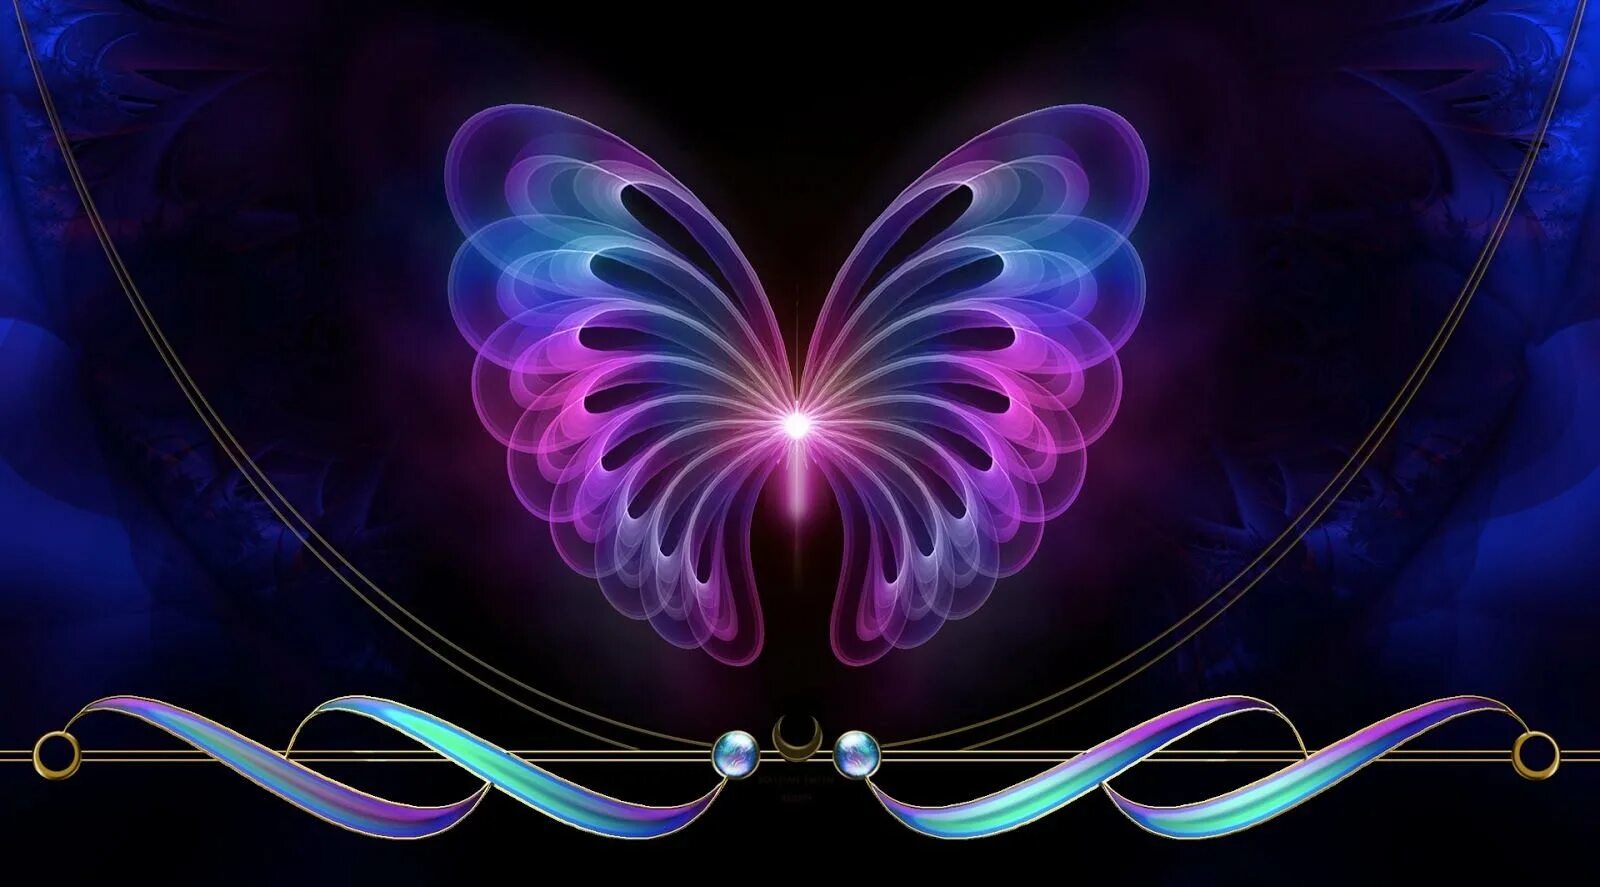 Картинку на экран телефона красивые обои. Неоновые бабочки. Красивый фон на телефон. Бабочка абстракция. Красивый фон с бабочками.